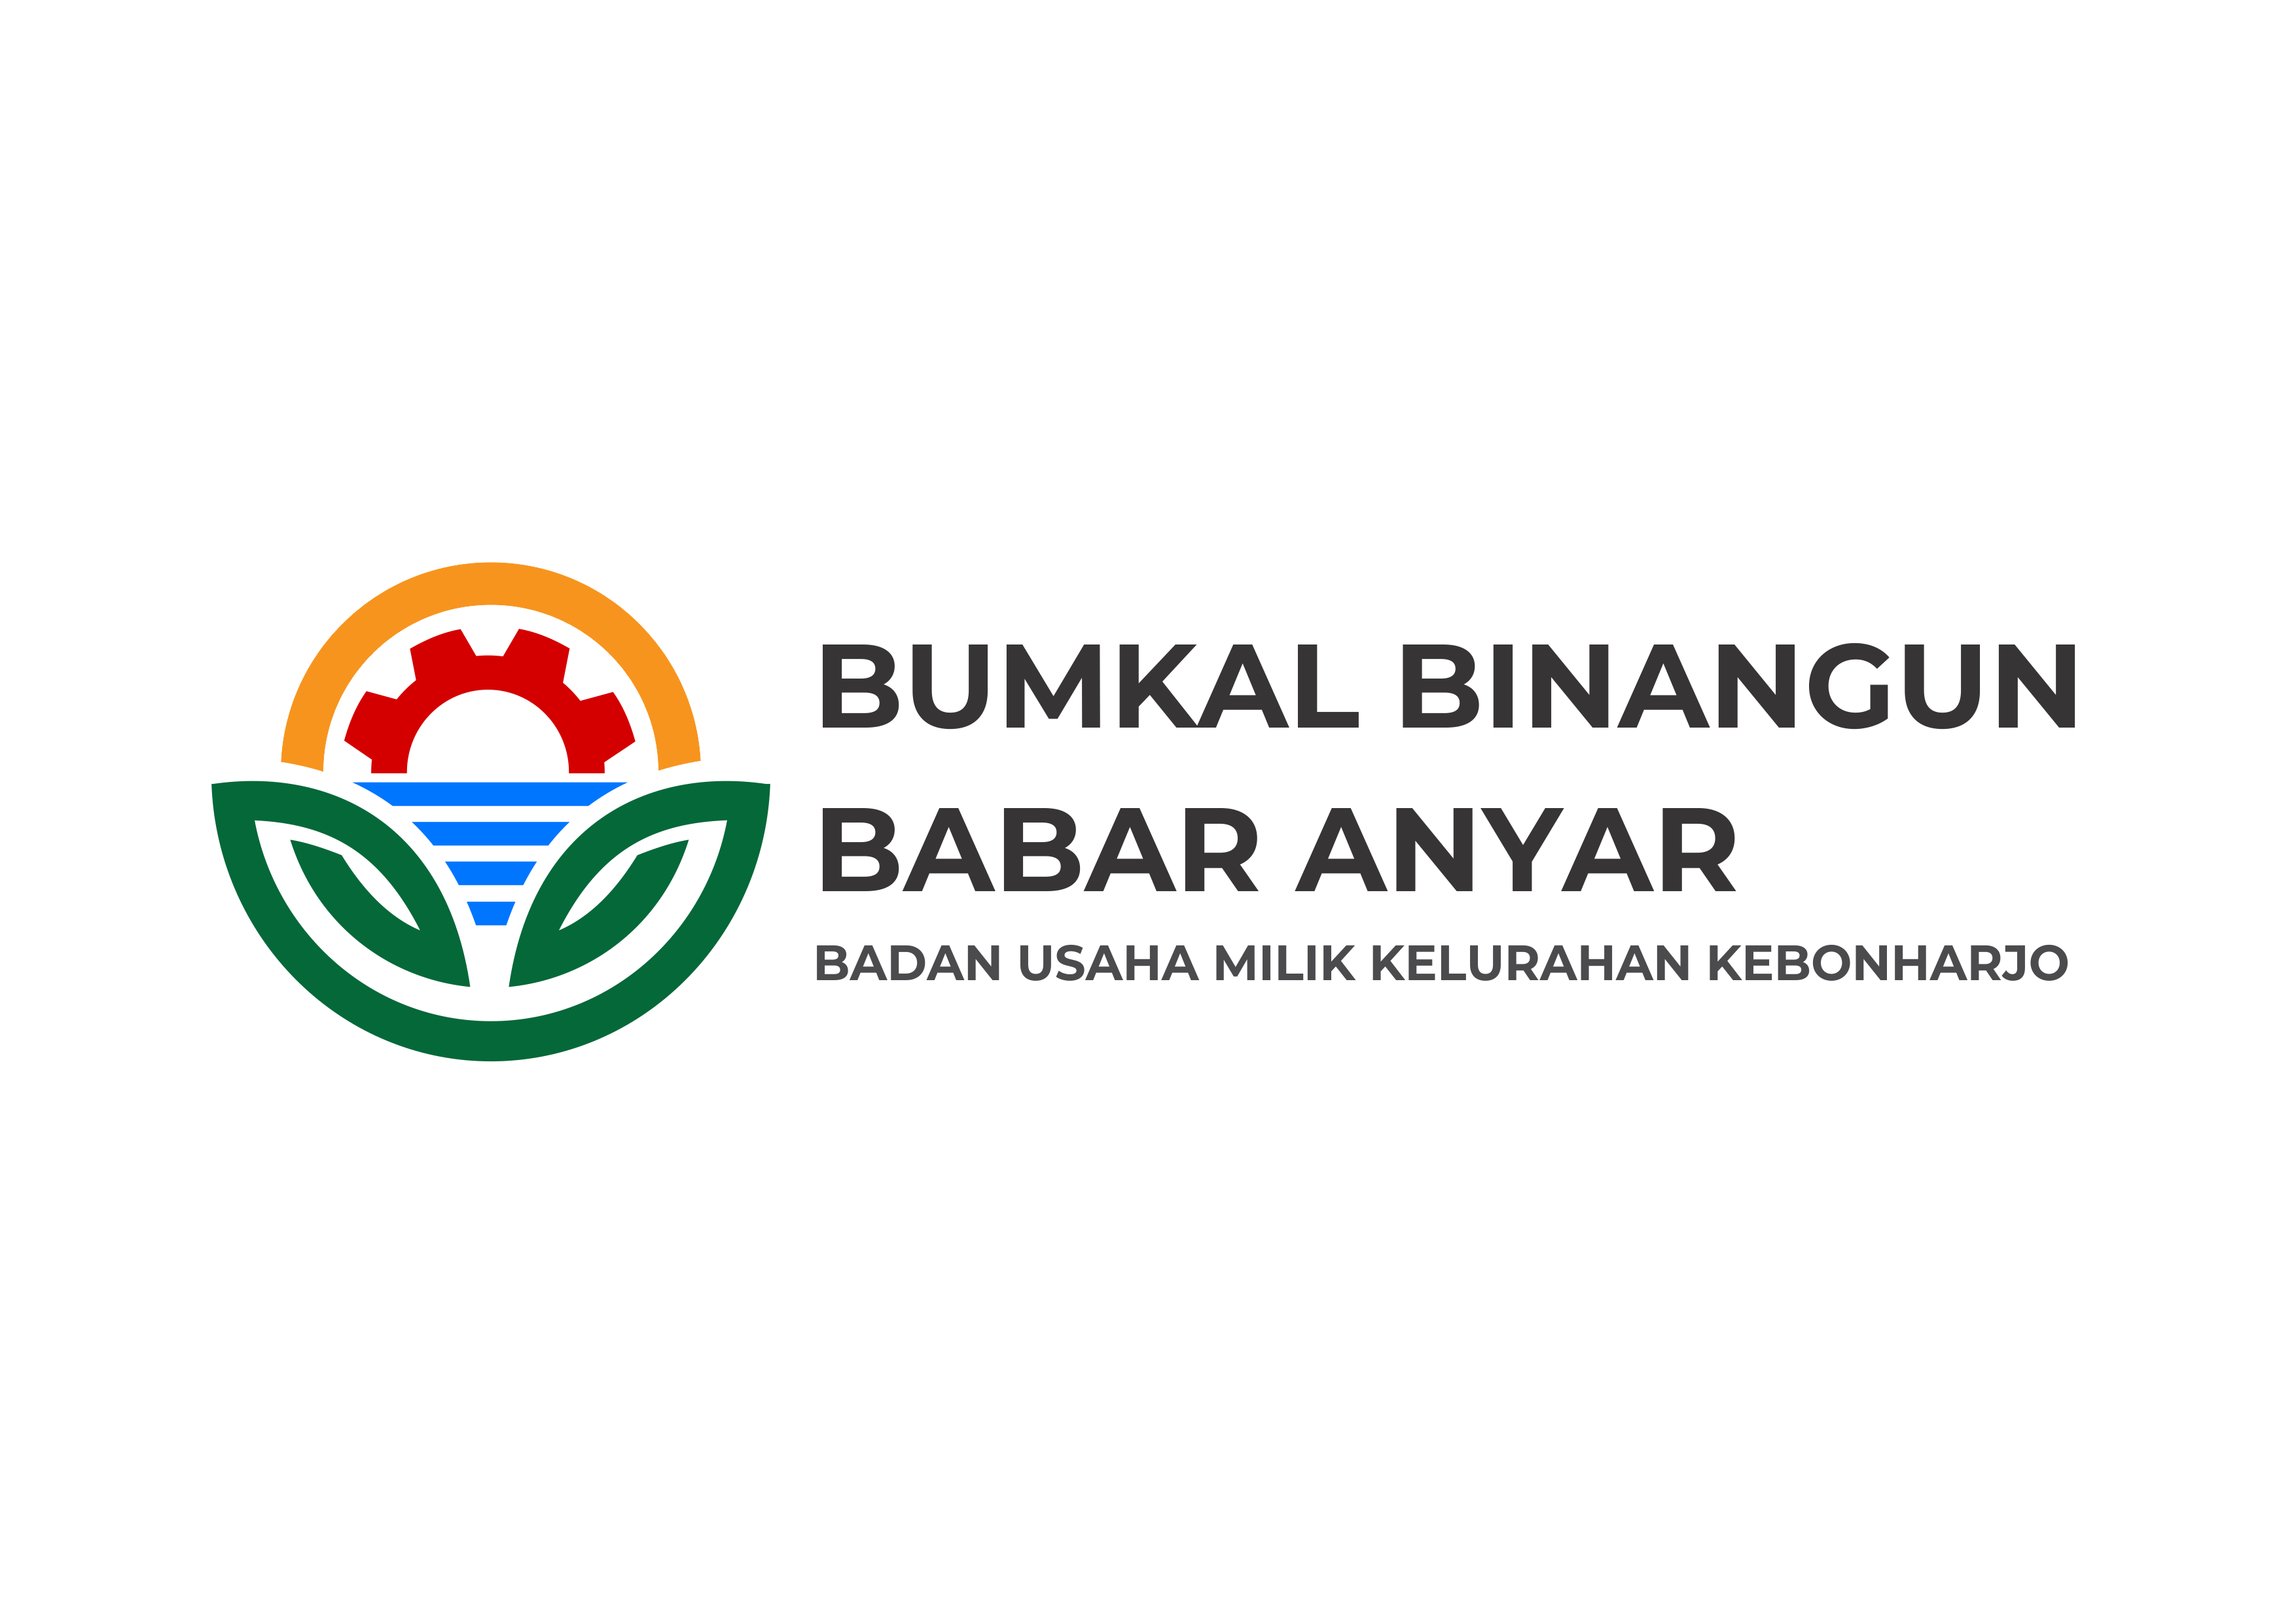 Pengumuman Hasil Lomba Desain Logo BUMDesa Binangun Babar Anyar Kalurahan Kebonharjo